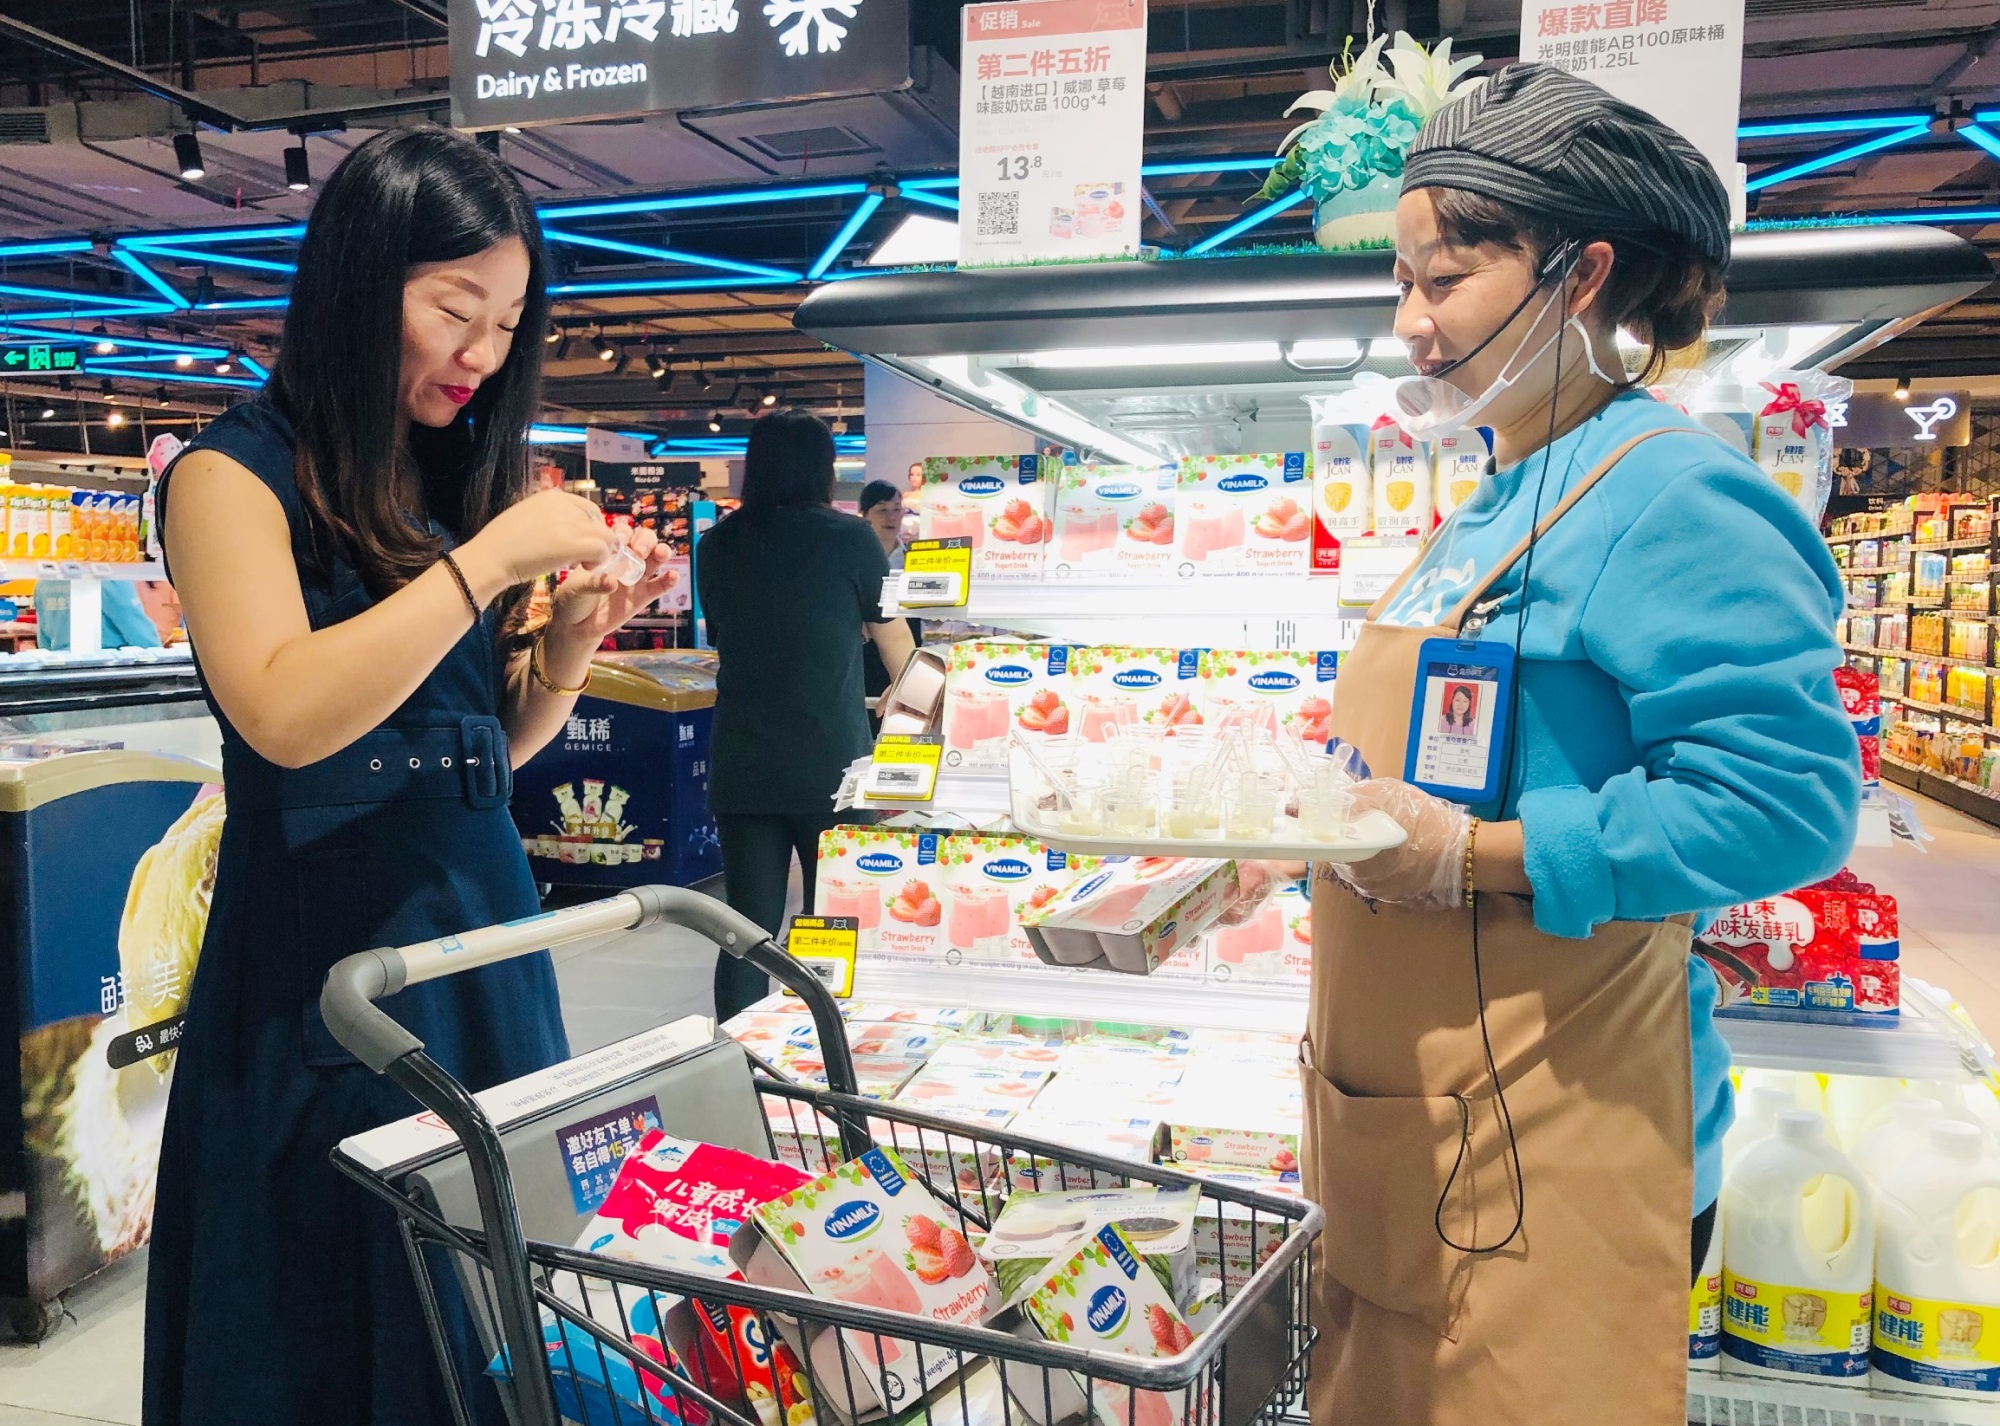 Sữa chua Vinamilk đã có mặt tại siêu thị thông minh Hema của Alibaba tại Trung Quốc - Ảnh 4